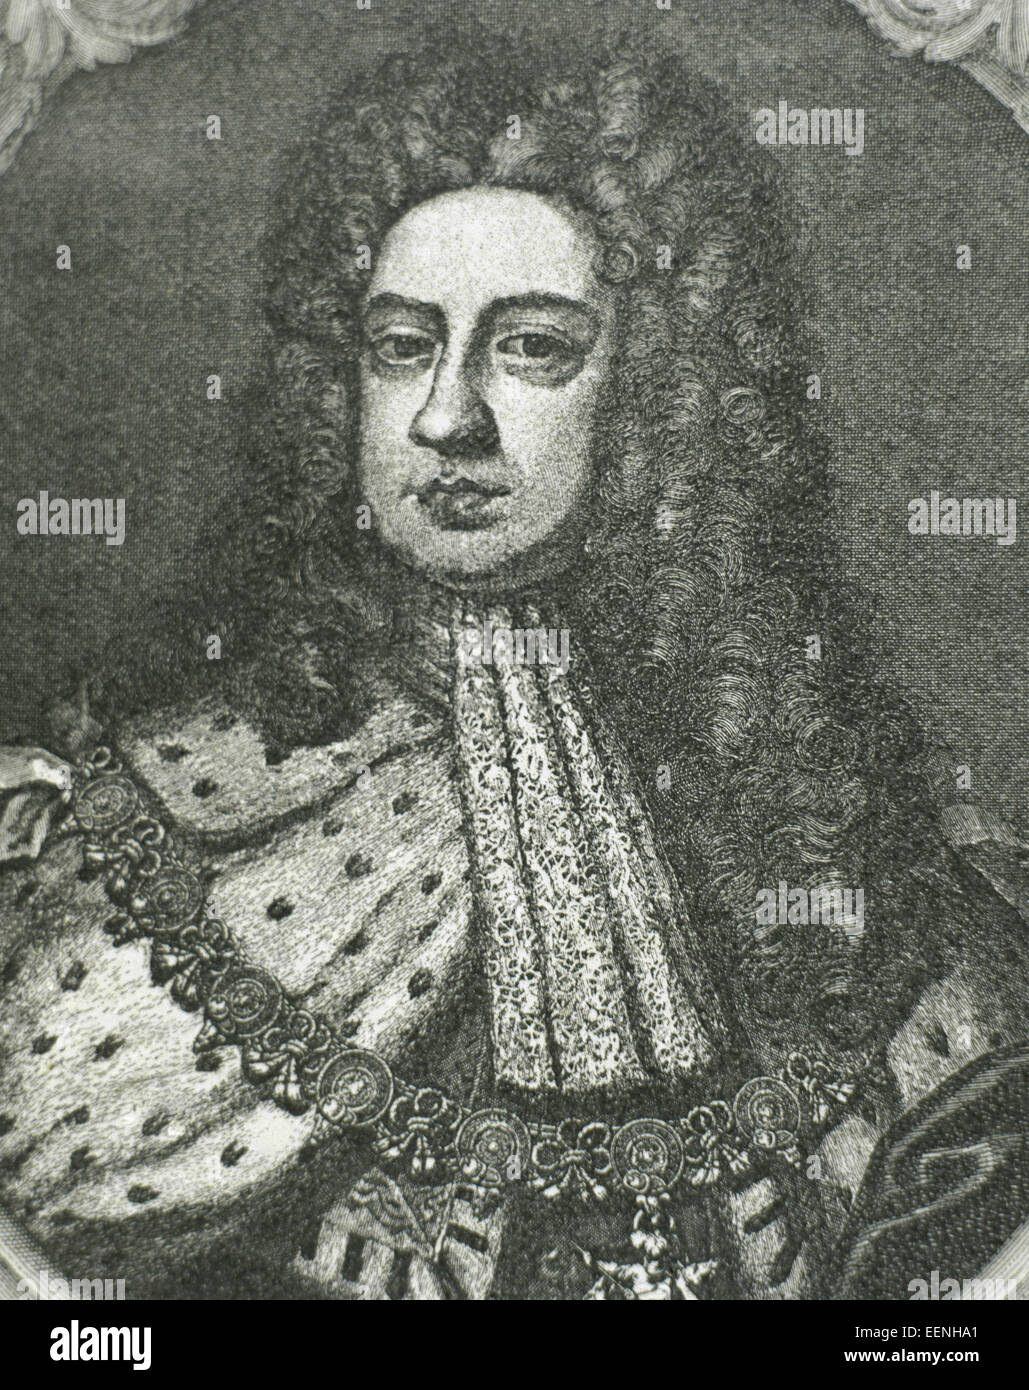 George II (1683-1760). König von Großbritannien und Irland. Kurfürsten des Heiligen Römischen Reiches. Porträt. Gravur. Stockfoto